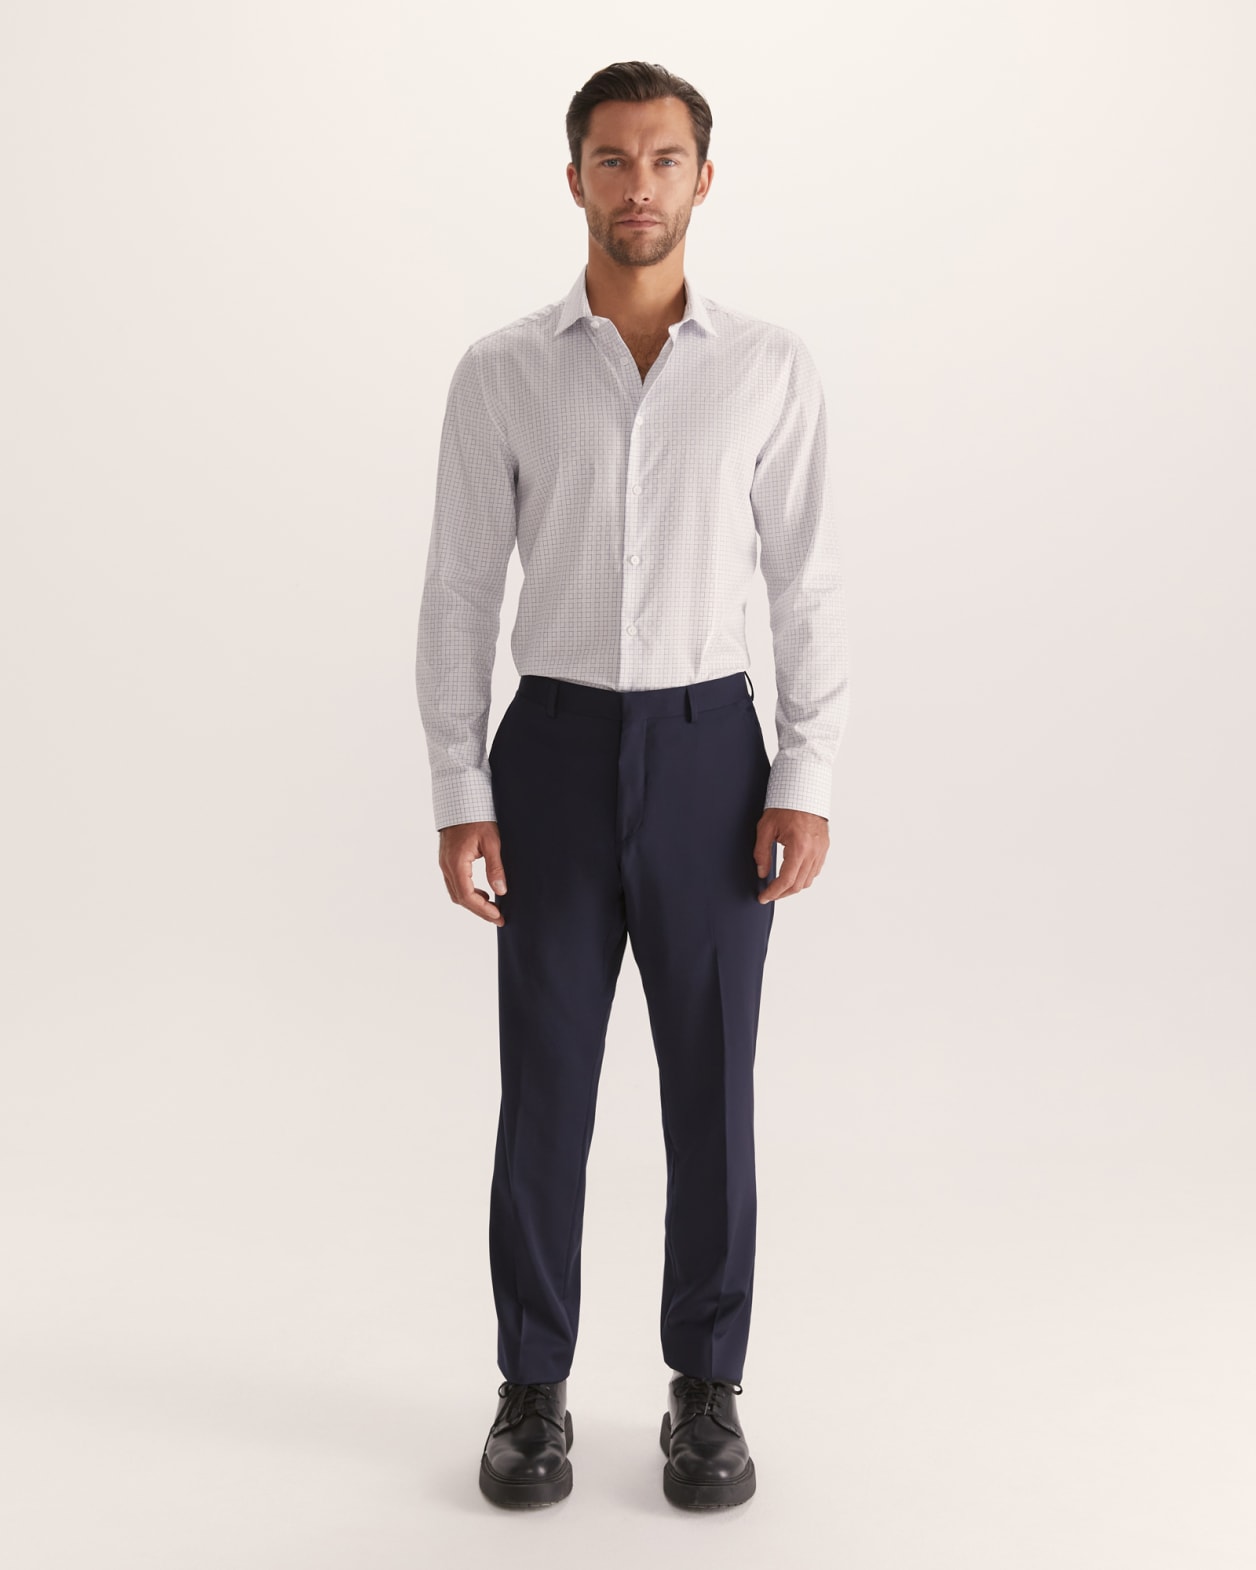 Gordon Long Sleeve Slim Check Shirt in WHITE/BLUE